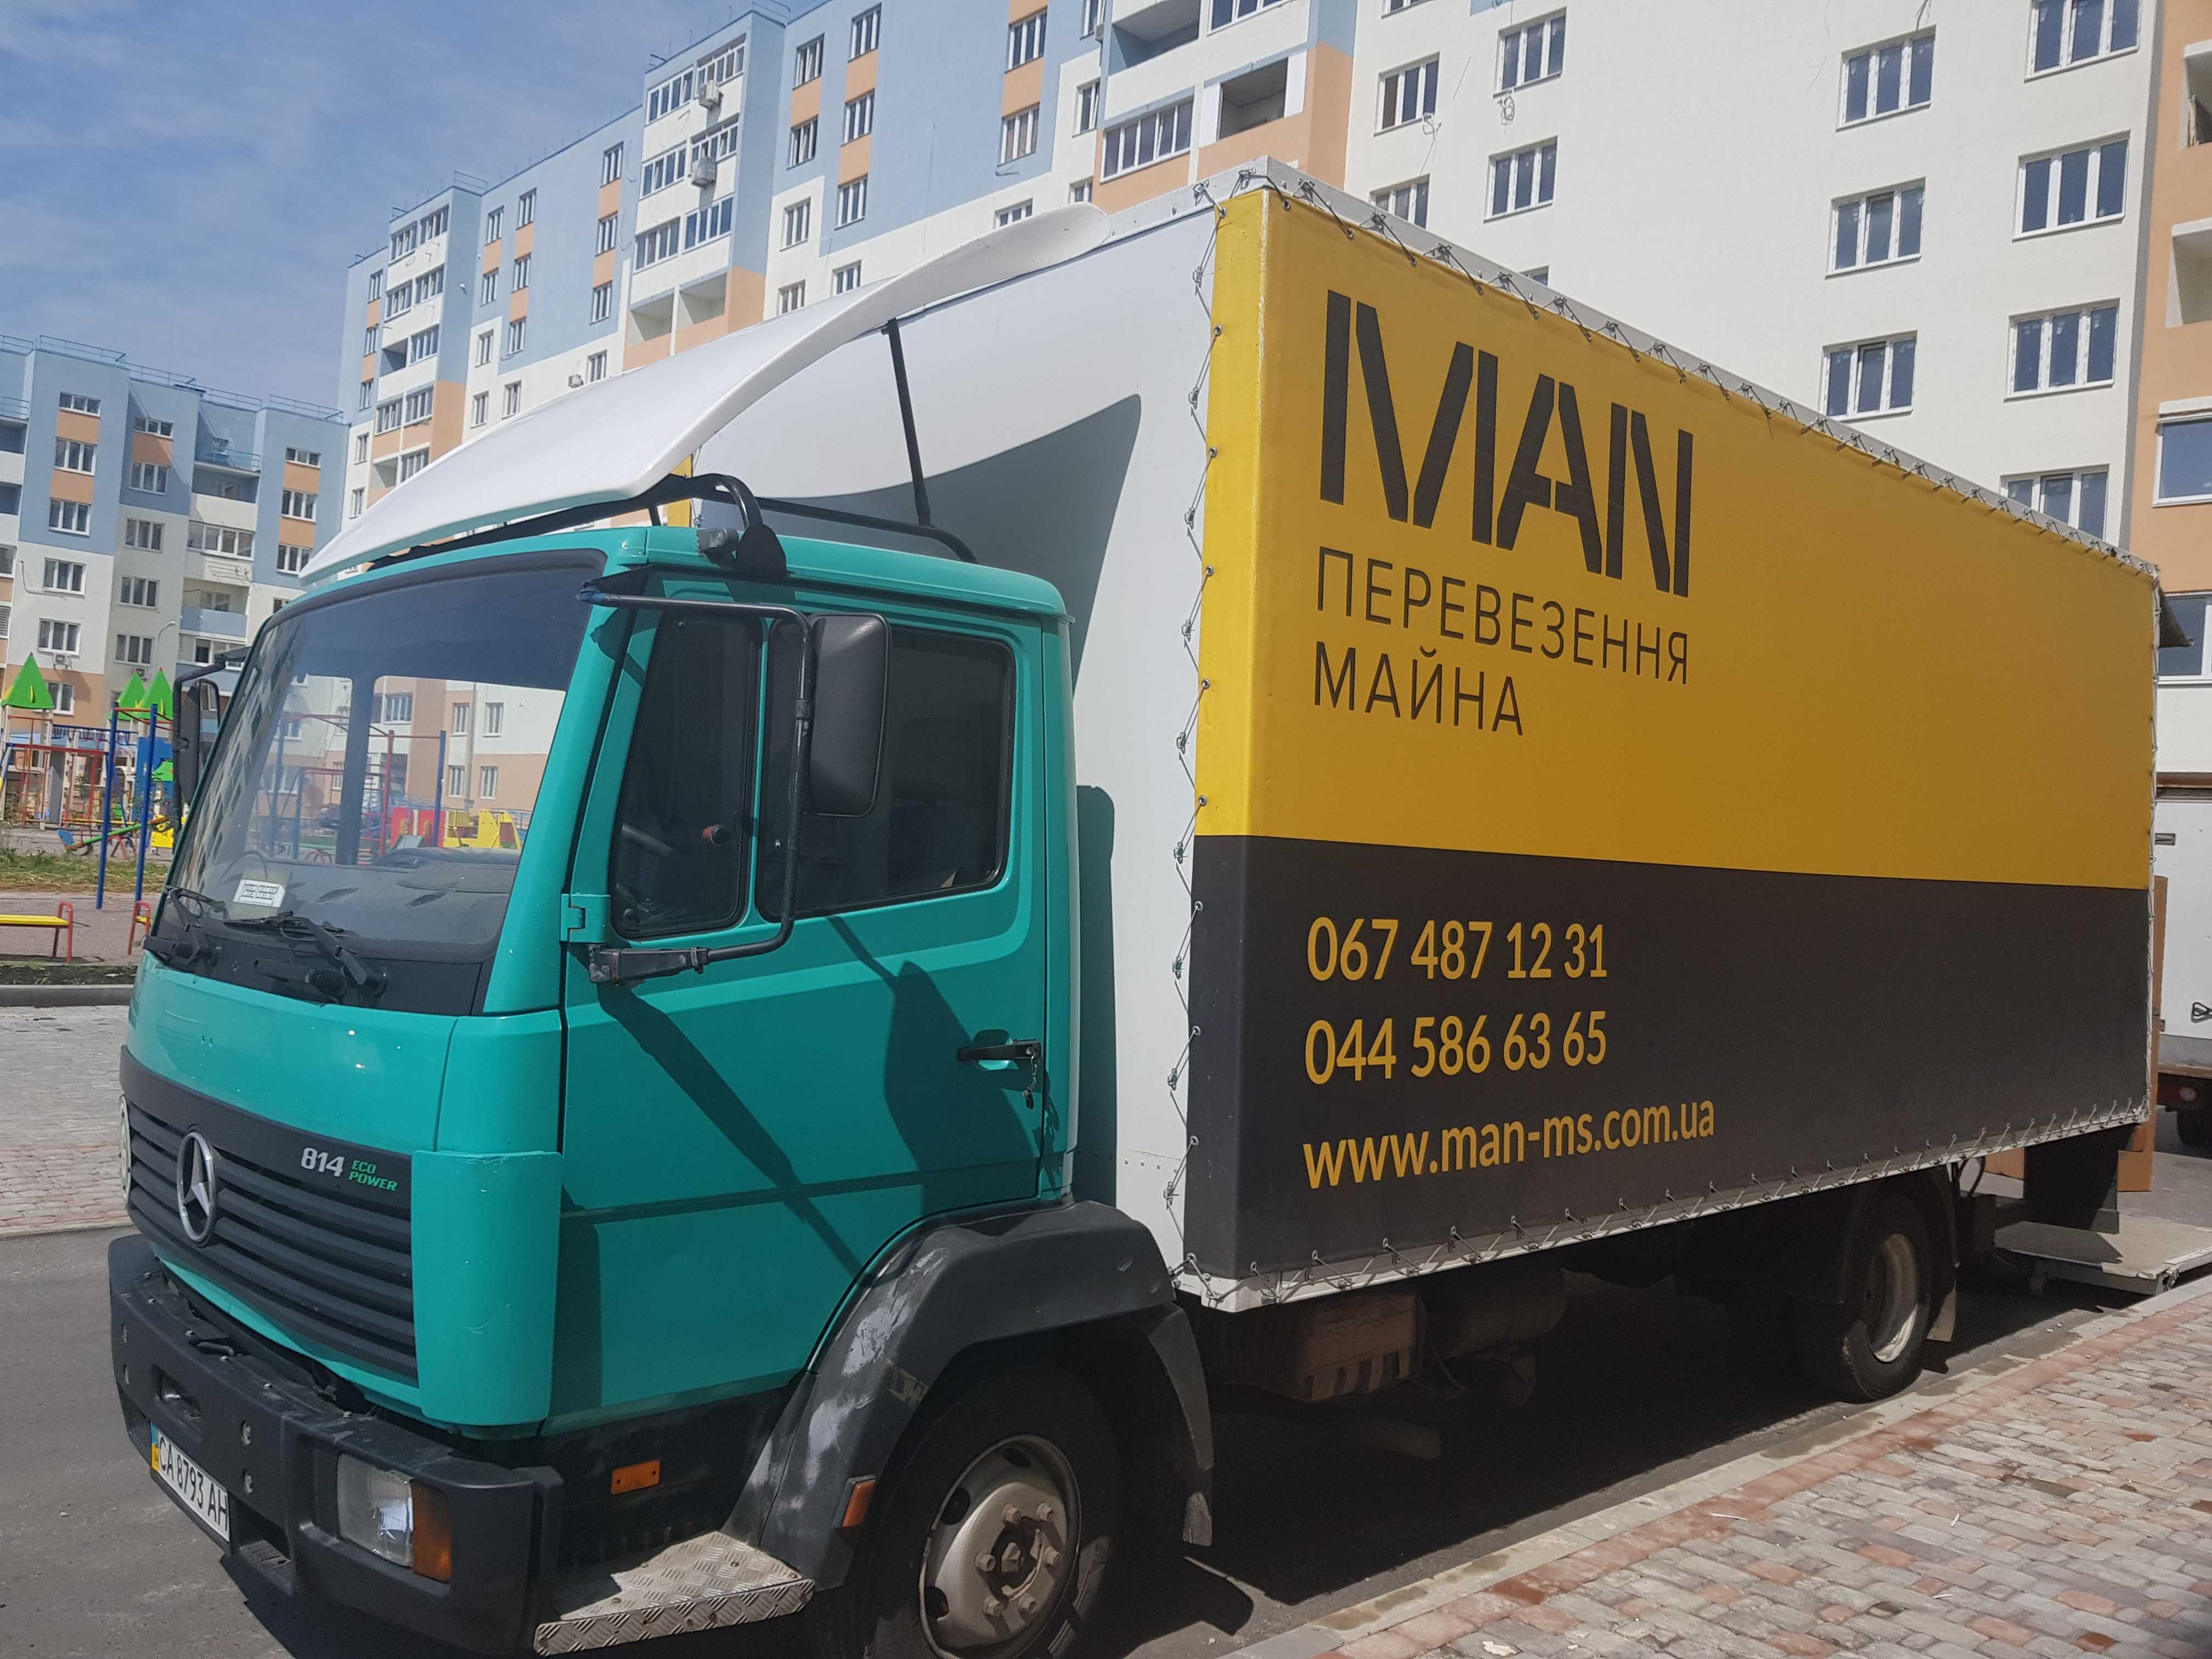 Перевезення меблів по Україні. Вантажники у всіх містах України